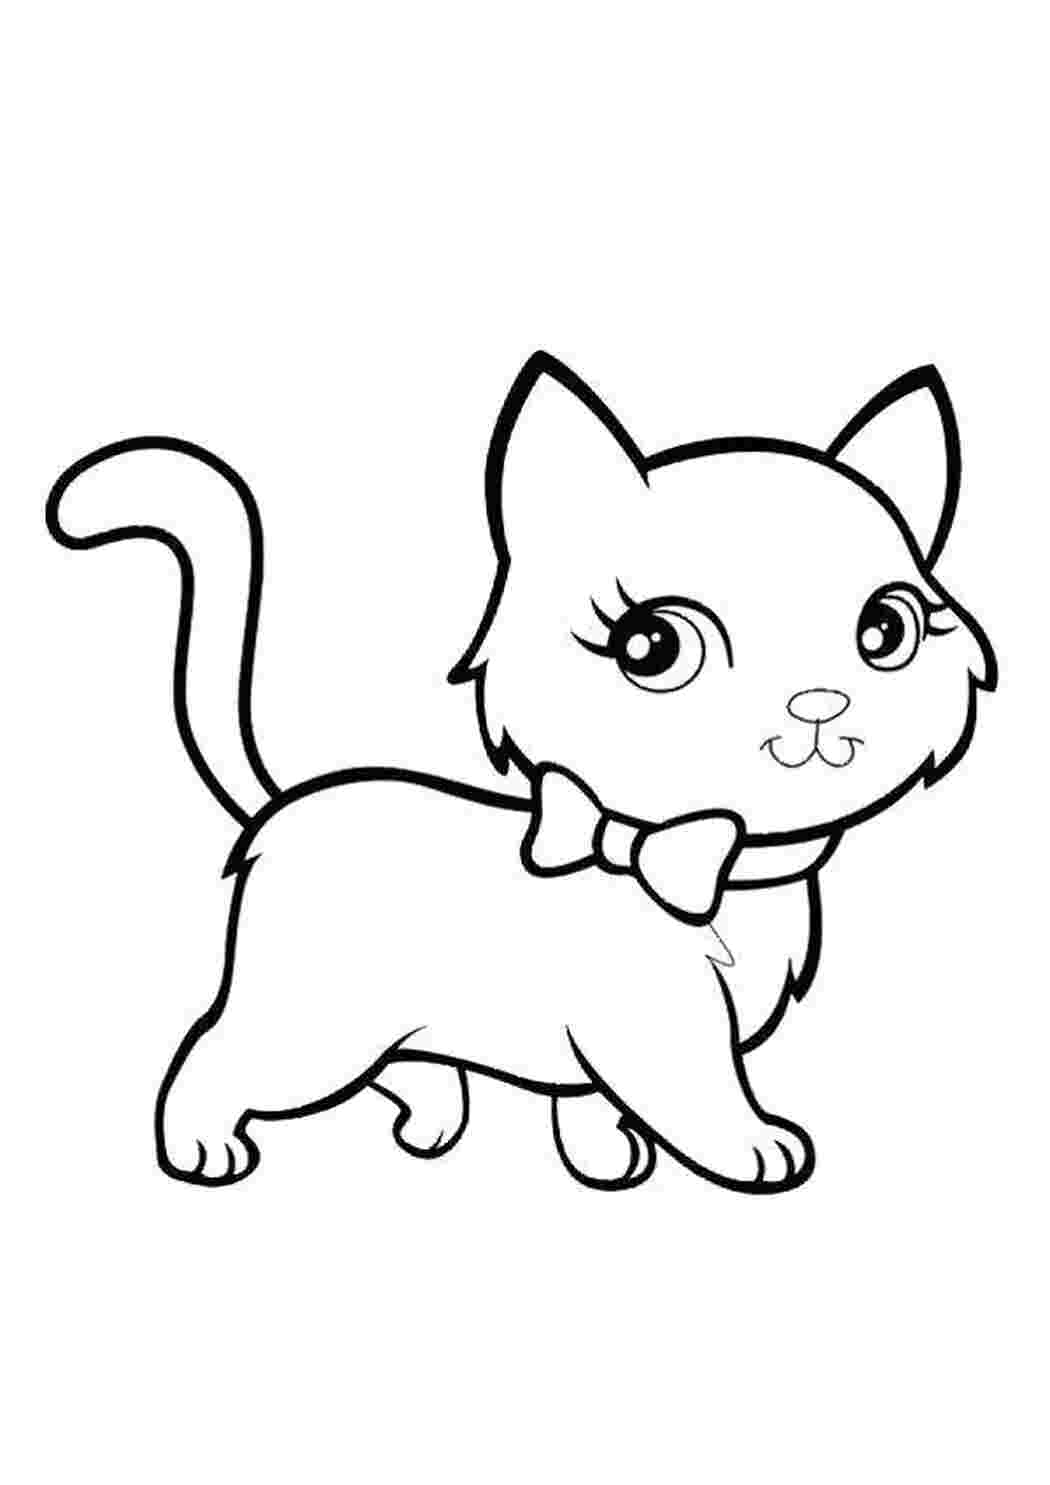 Раскраски девочек распечатать животные кошки. Раскрашиваем в онлайн. Коты флэш раскраски